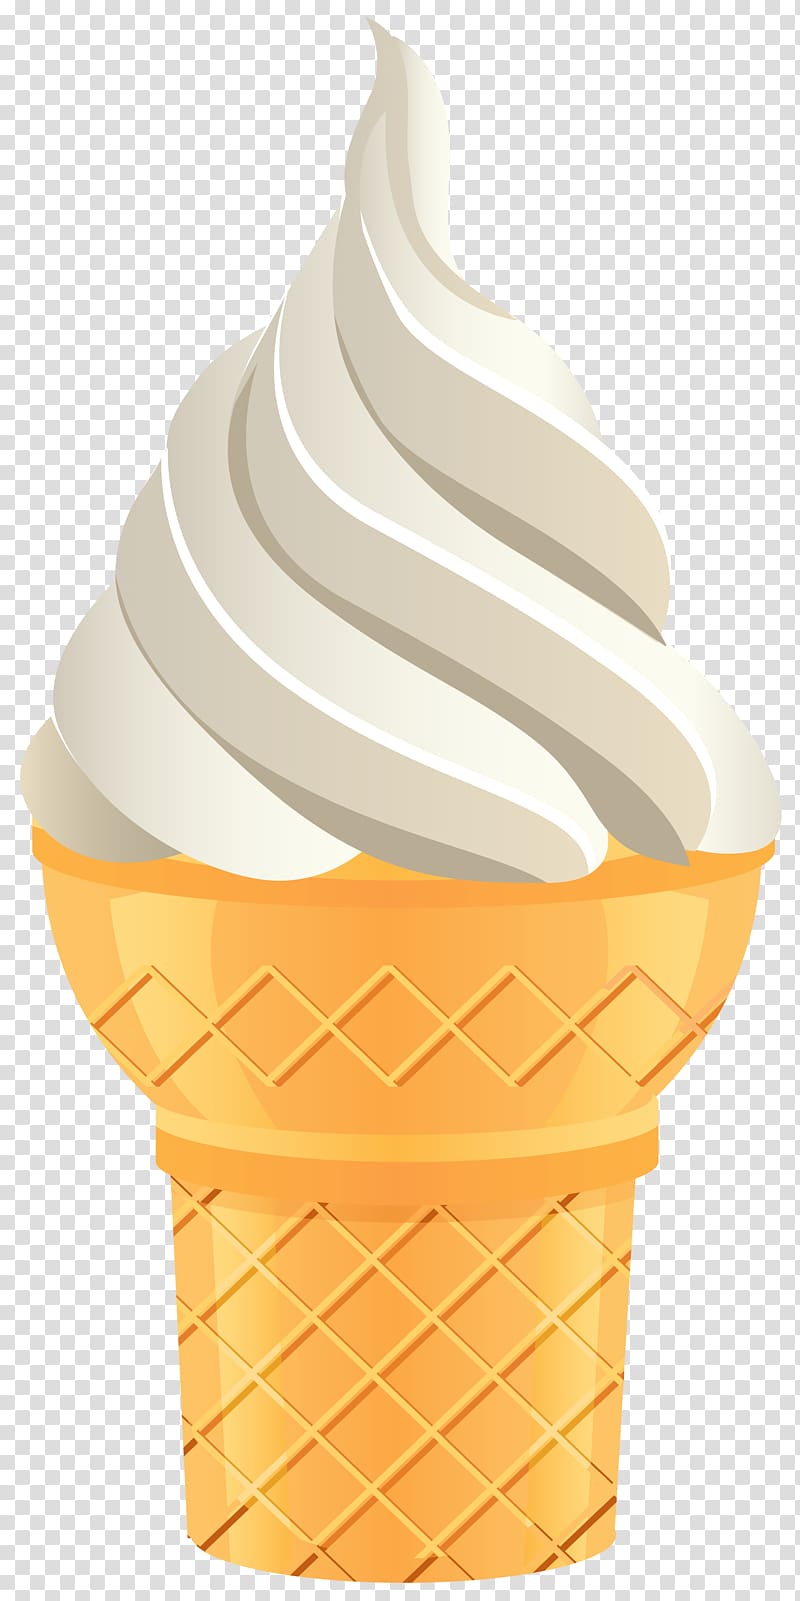 ice cream illustration, Ice cream cone Flavor Cup, Vanilla Ice Cream Cone transparent background PNG clipart